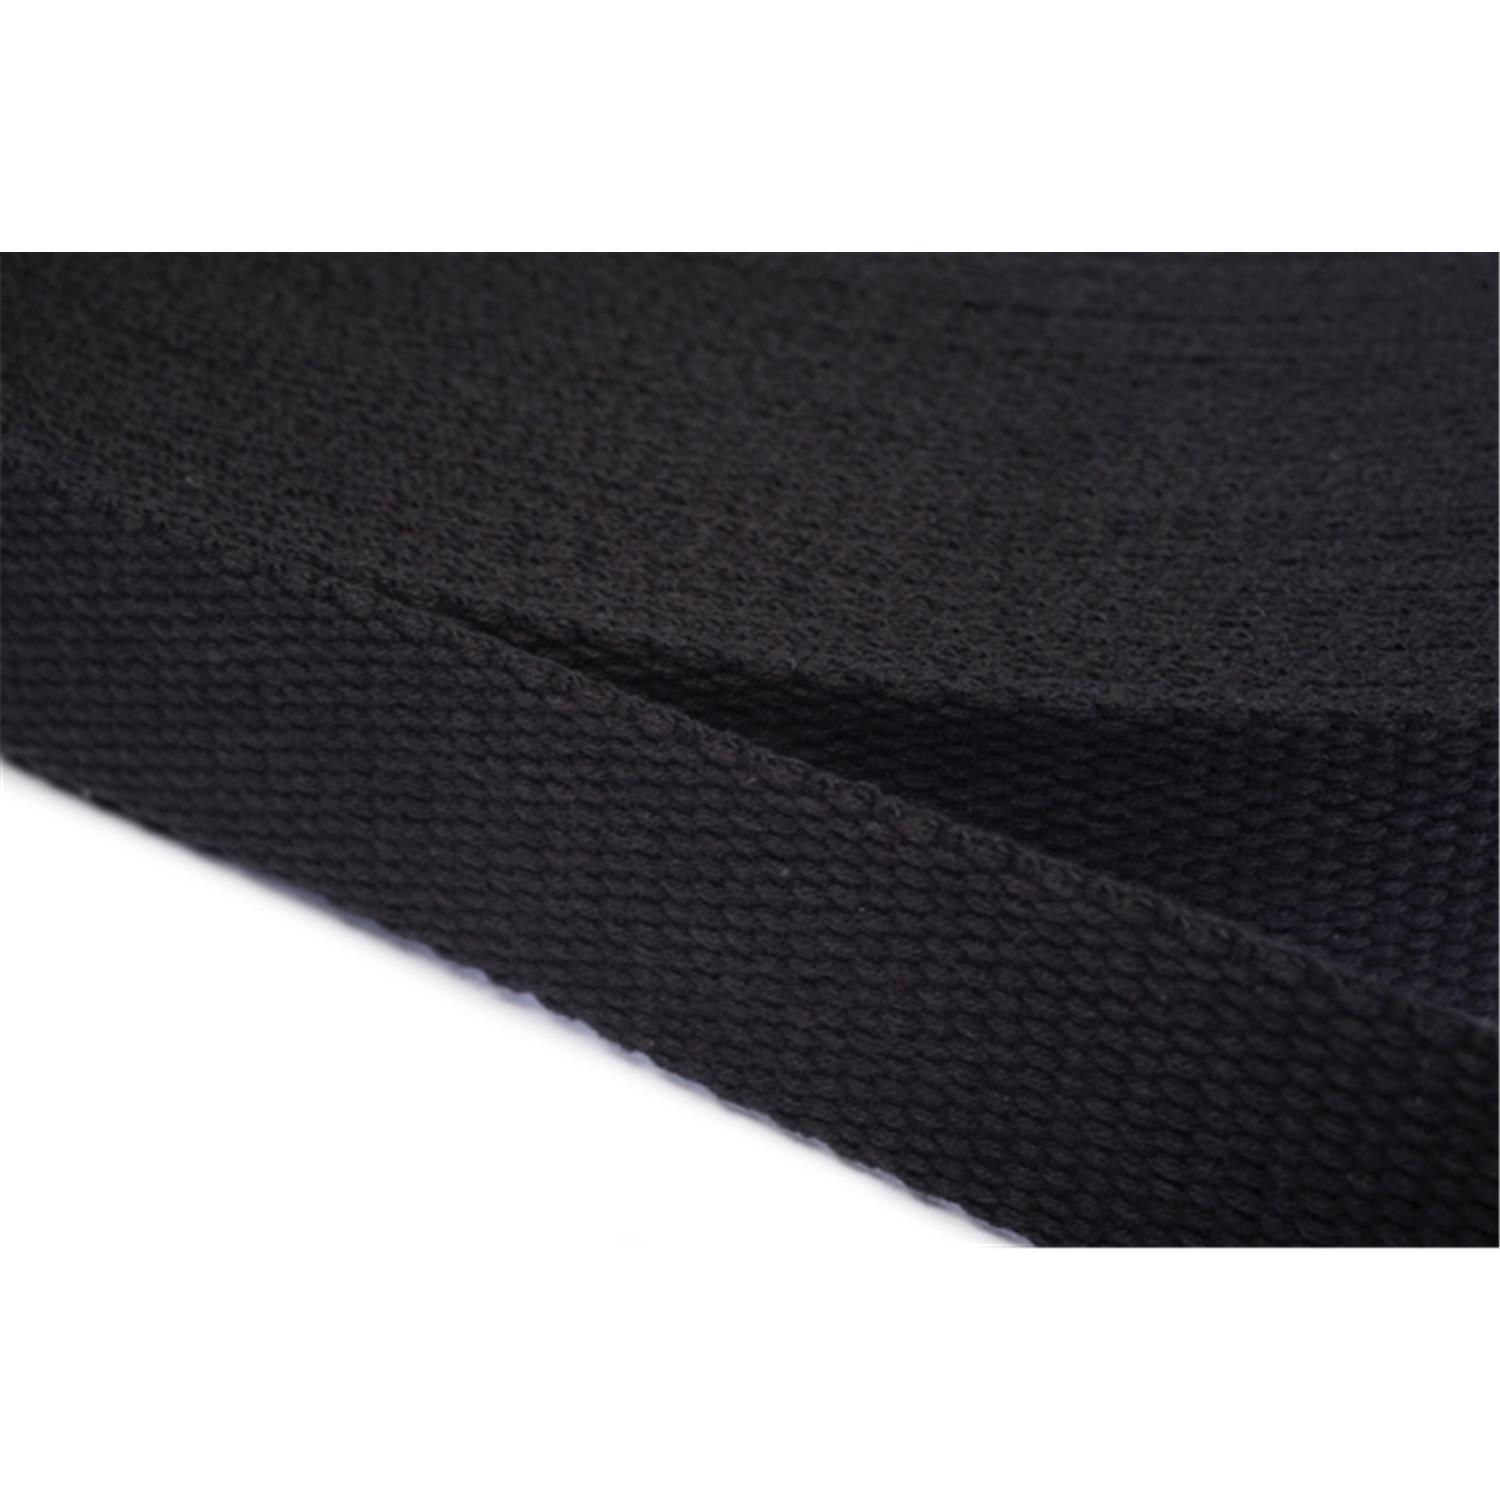 Gurtband aus Baumwolle 30mm in 20 Farben 20 - schwarz 6 Meter